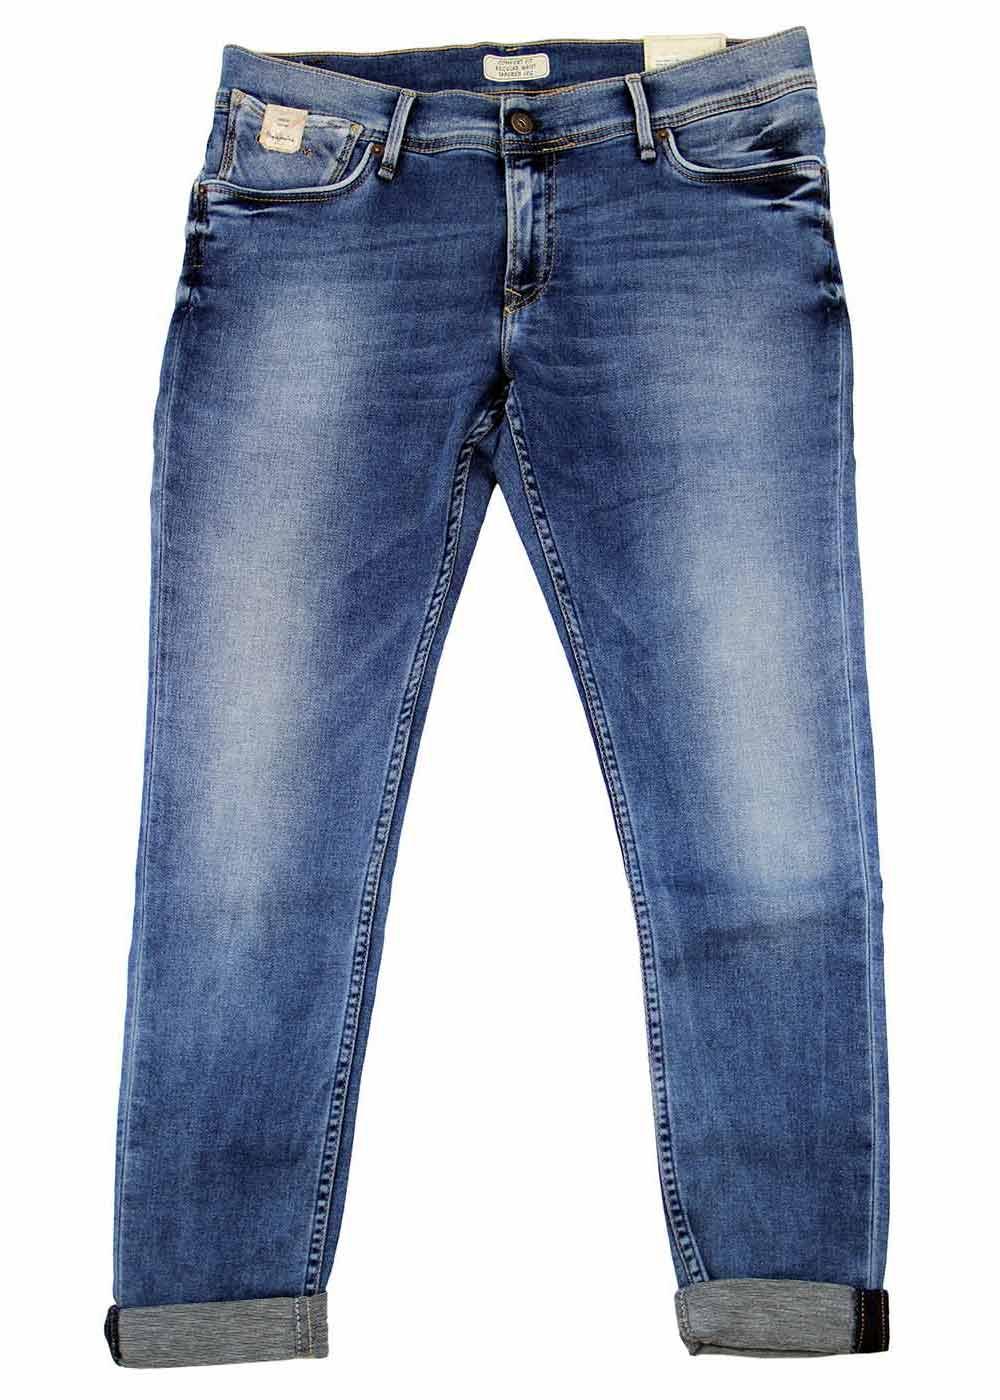 Slim Fit Original Pepe London Denims Jeans at Rs 635/piece in